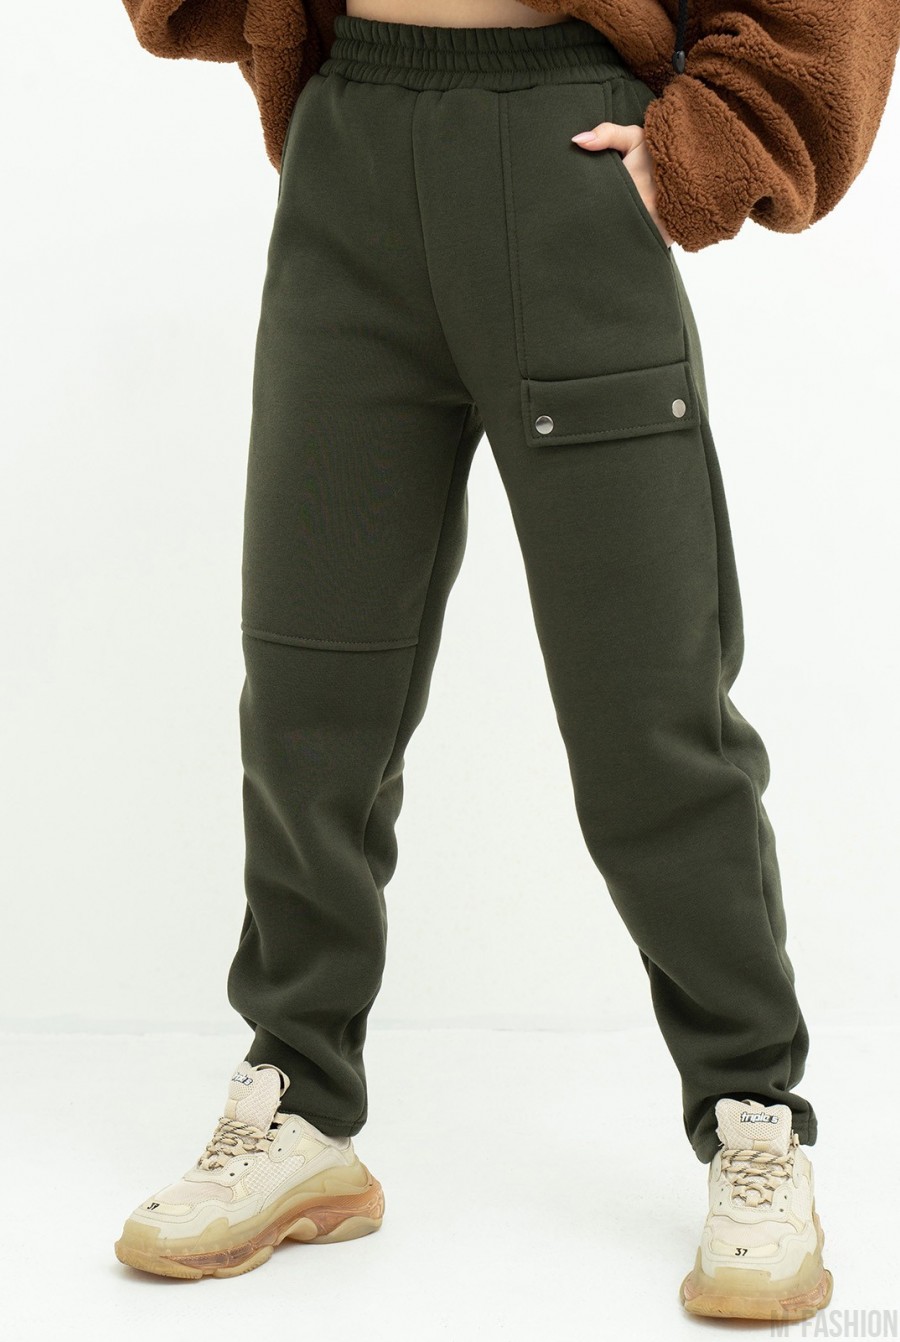 Теплые спортивные штаны цвета хаки с клапаном - Фото 1